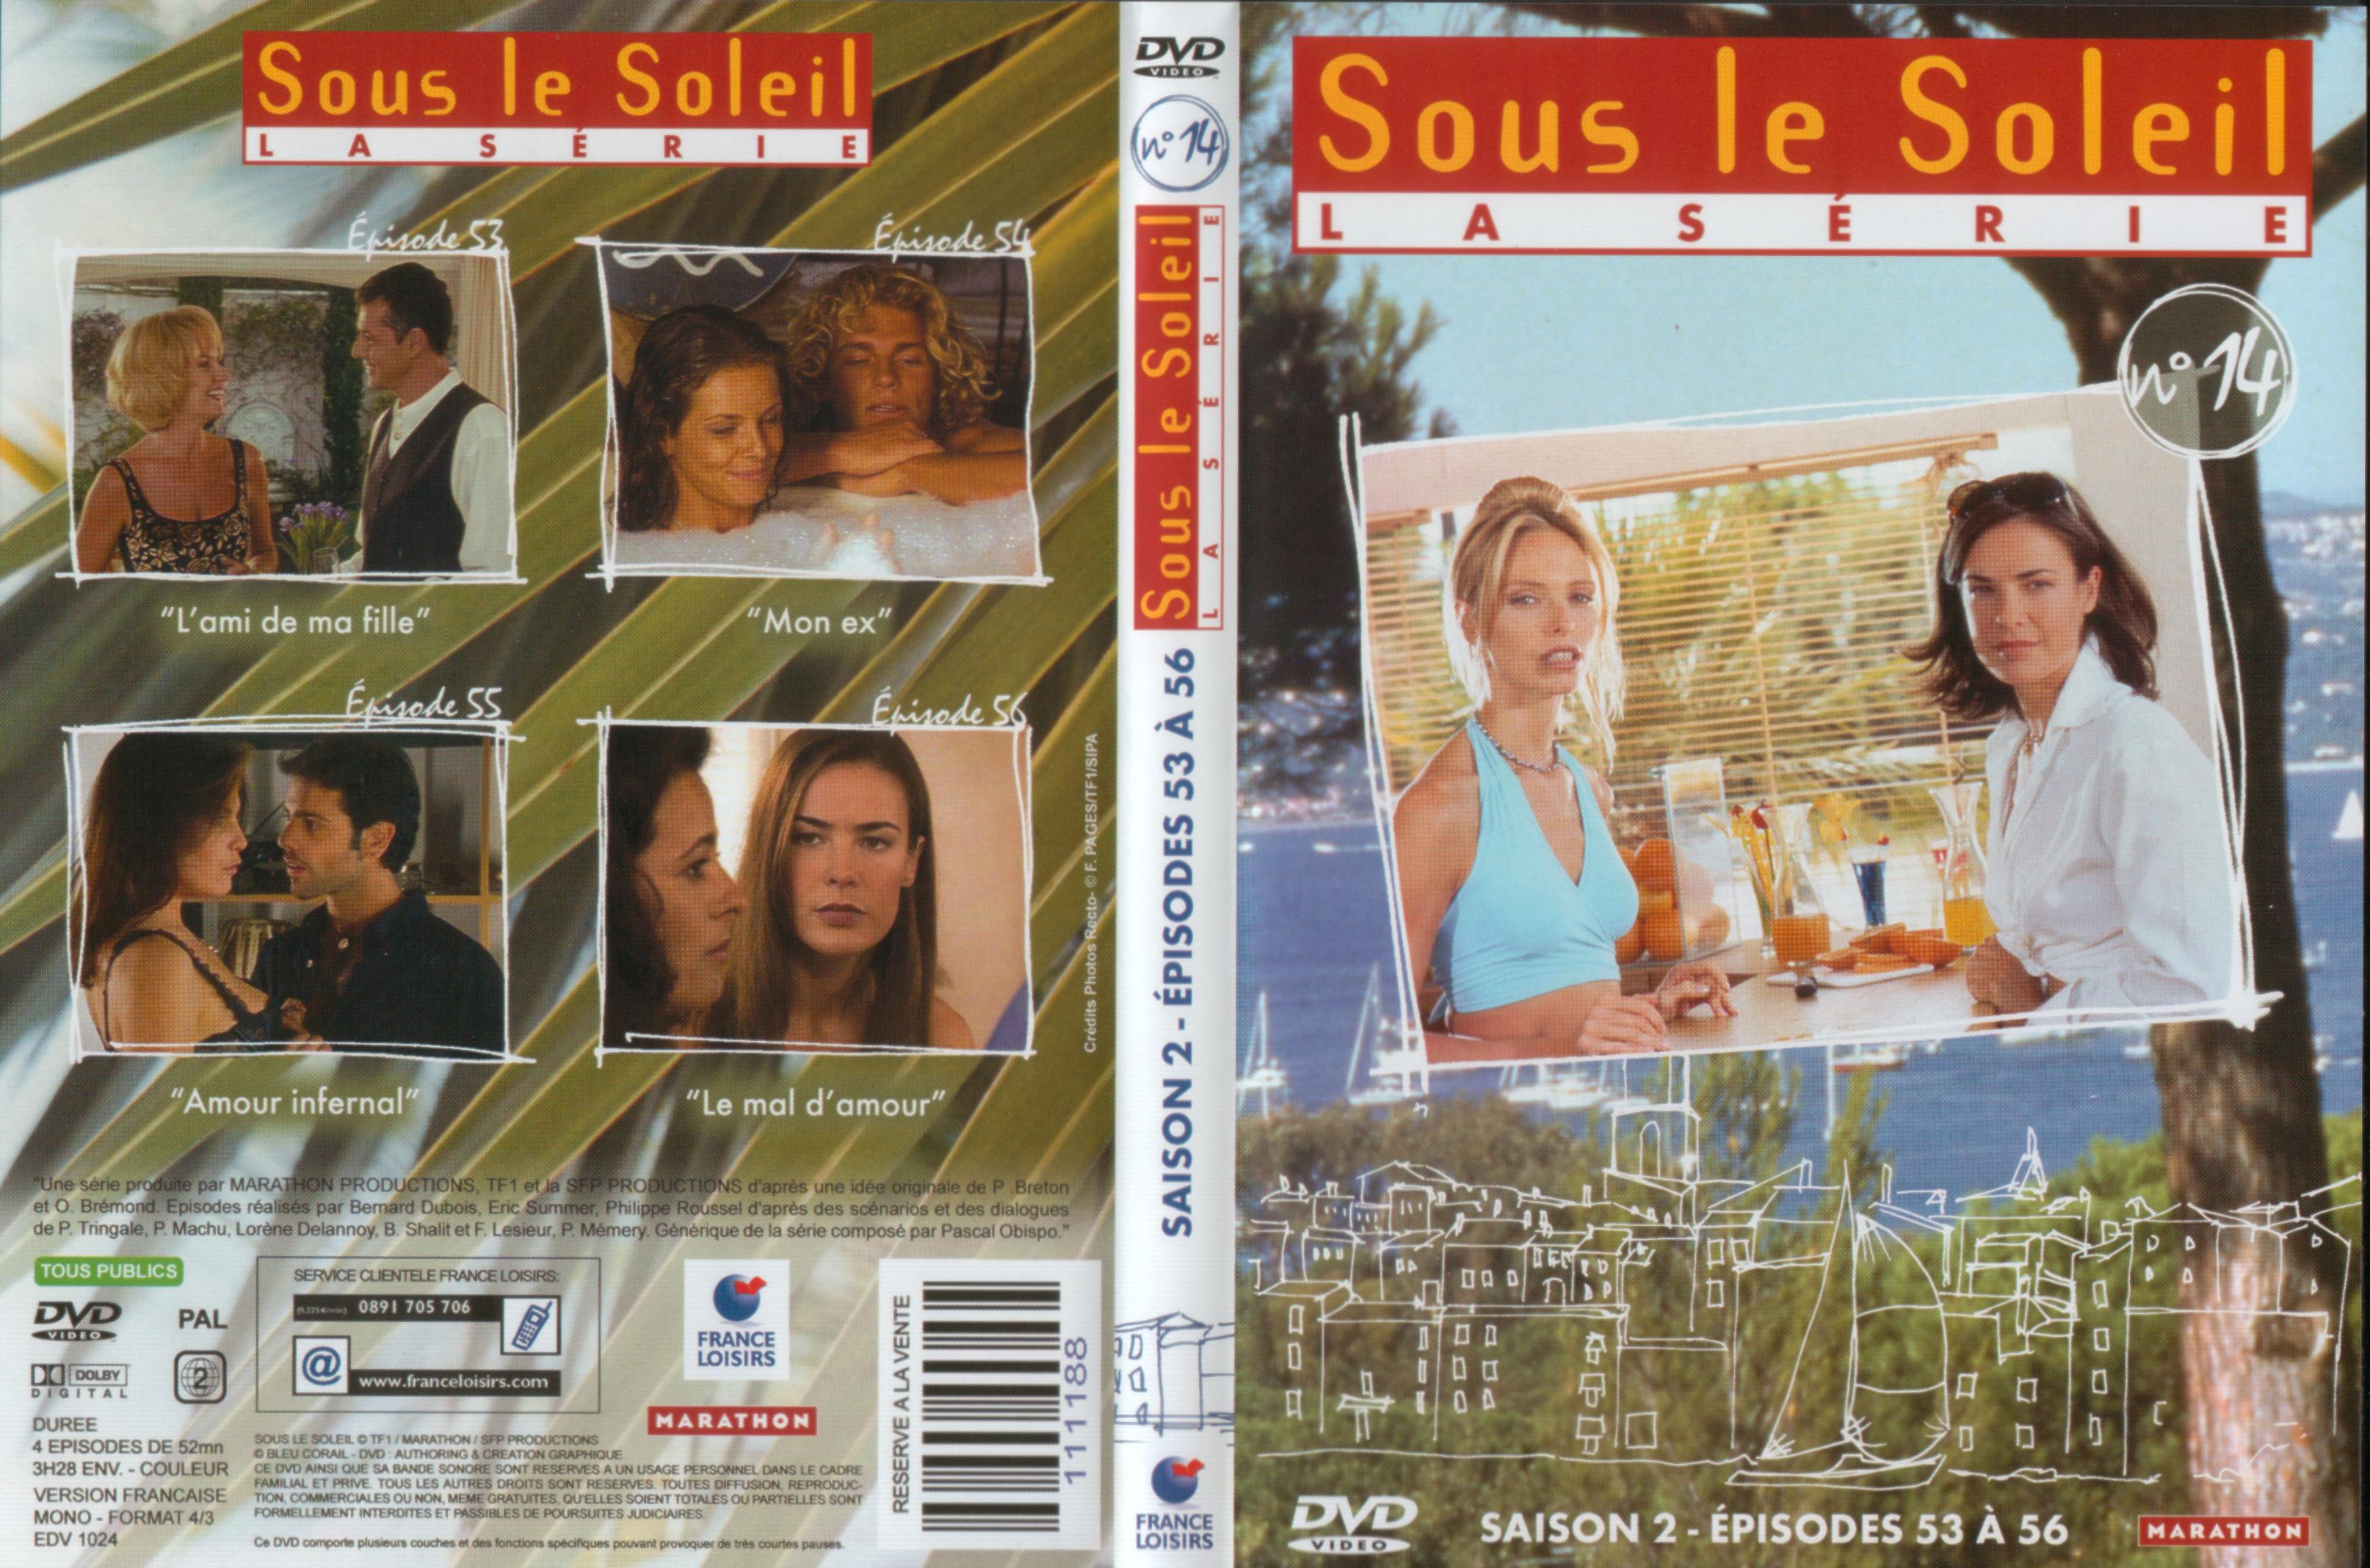 Jaquette DVD Sous le soleil saison 2 vol 14